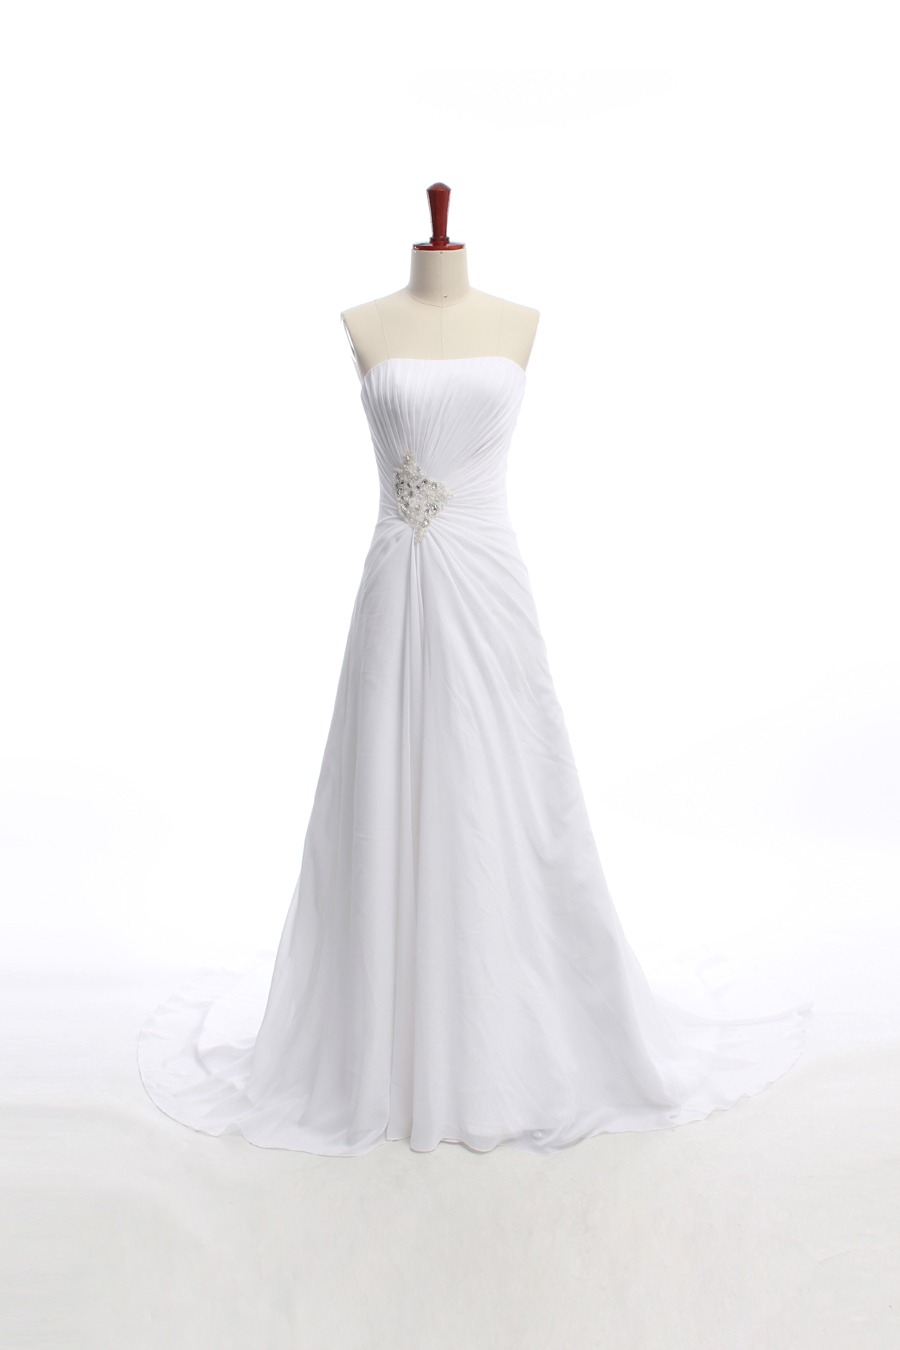 Gorgeous Strapless A-line Chapel Train Bridal Wedding Dress Bridal Dress Gown Wedding Gown Bridal Gown Lace Bridal Dress